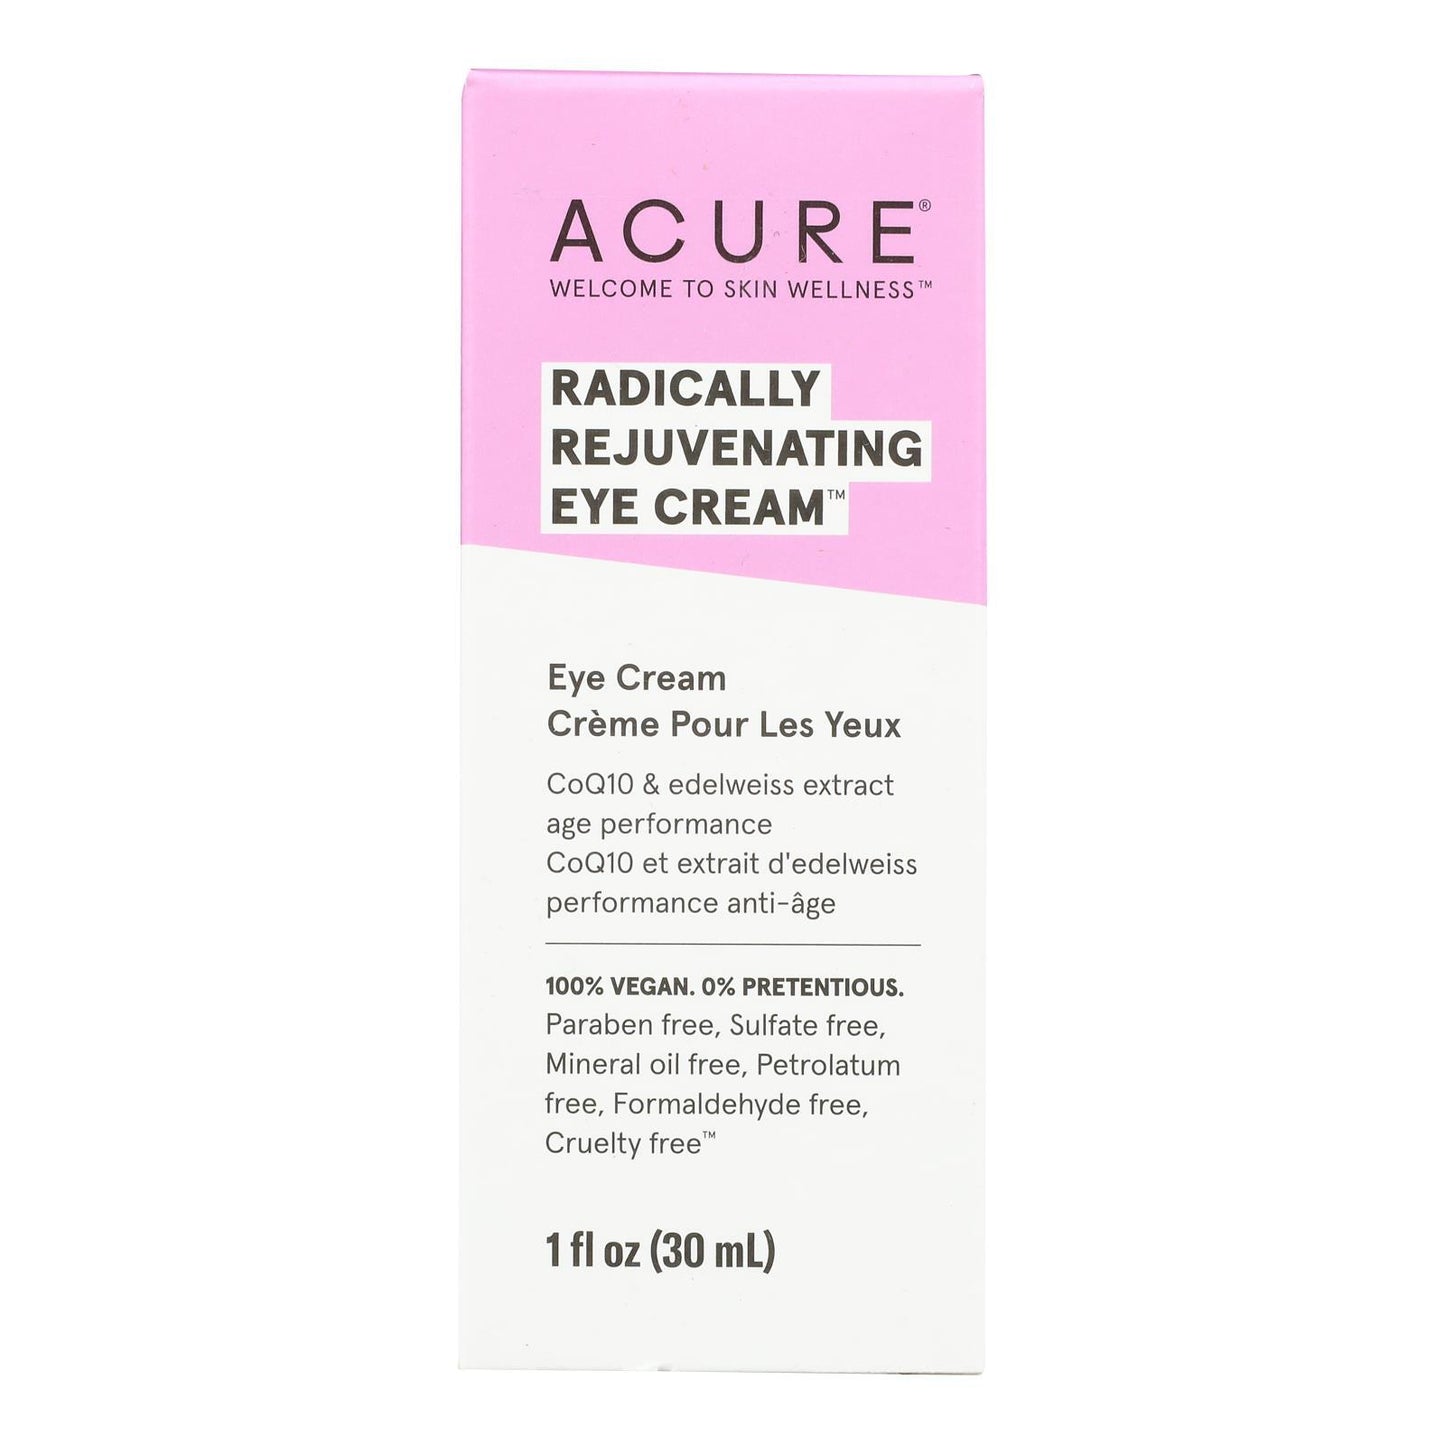 Acure - Eye Cream - Chlorella and Edelweiss Stem Cell - 1 FL oz.